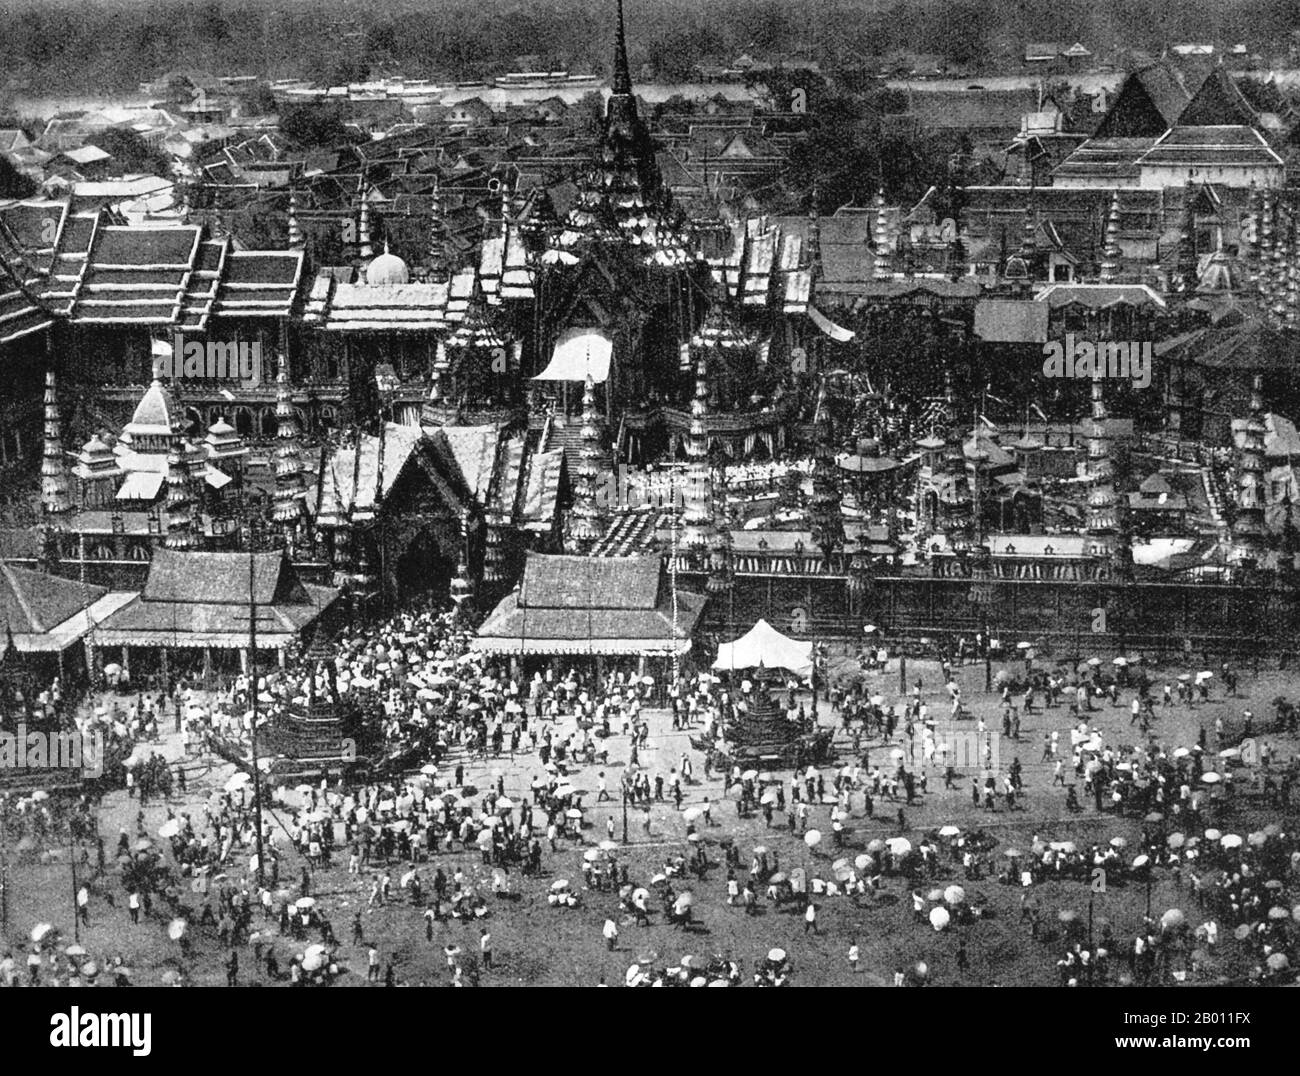 Thailand: Ein Blick auf den Tempel und die Pavillons, die für die Einäscherungszeremonie zweier Prinzen während der Regierungszeit von König Chulalongkorn (1868-1910) in Bangkok errichtet wurden. Vor dem Großen Palast im Zentrum von Bangkok gelegen, wurde dieser 60 m lange Tempel ursprünglich für die Einäscherung von König Mongkut (r. 1851 – 68), die nach einer Reise in die Provinz Prachuap Khiri Khan an Malaria starb, um einer totalen Sonnenfinsternis zu Zeuge zu werden. Bekannt als Berg Meru, nach dem heiligen Berg in der hinduistischen und buddhistischen Kosmologie, um die Göttlichkeit des Königs zu symbolisieren, wurde der Tempel mit Gold und Spiegelglas dekoriert. Stockfoto